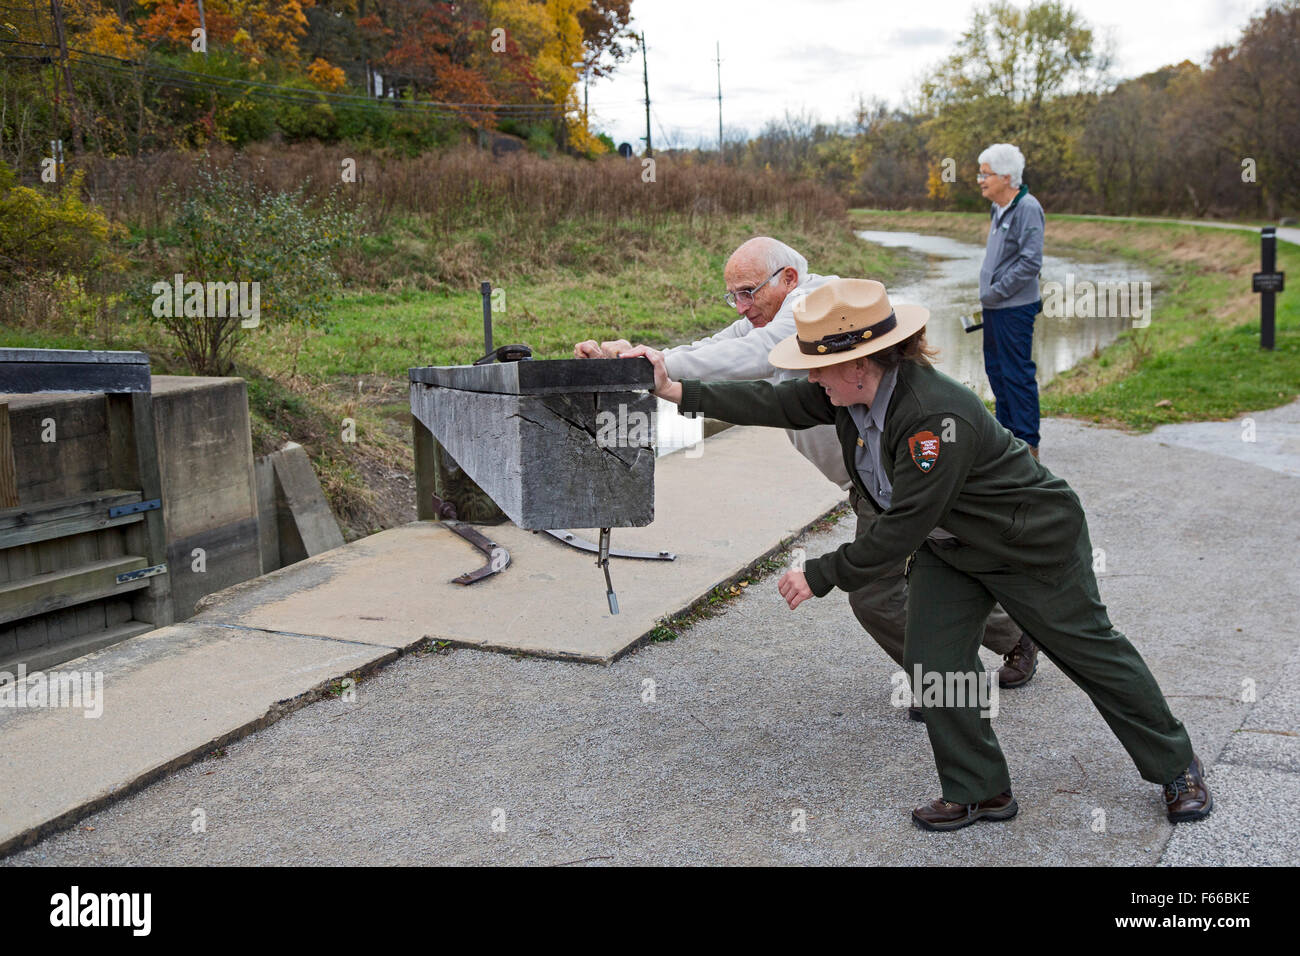 Cuyahoga Valley National Park, Ohio - ein Parkranger hilft einen Besucher während einer Demonstration Kanal sperren die Schleusentore öffnen. Stockfoto